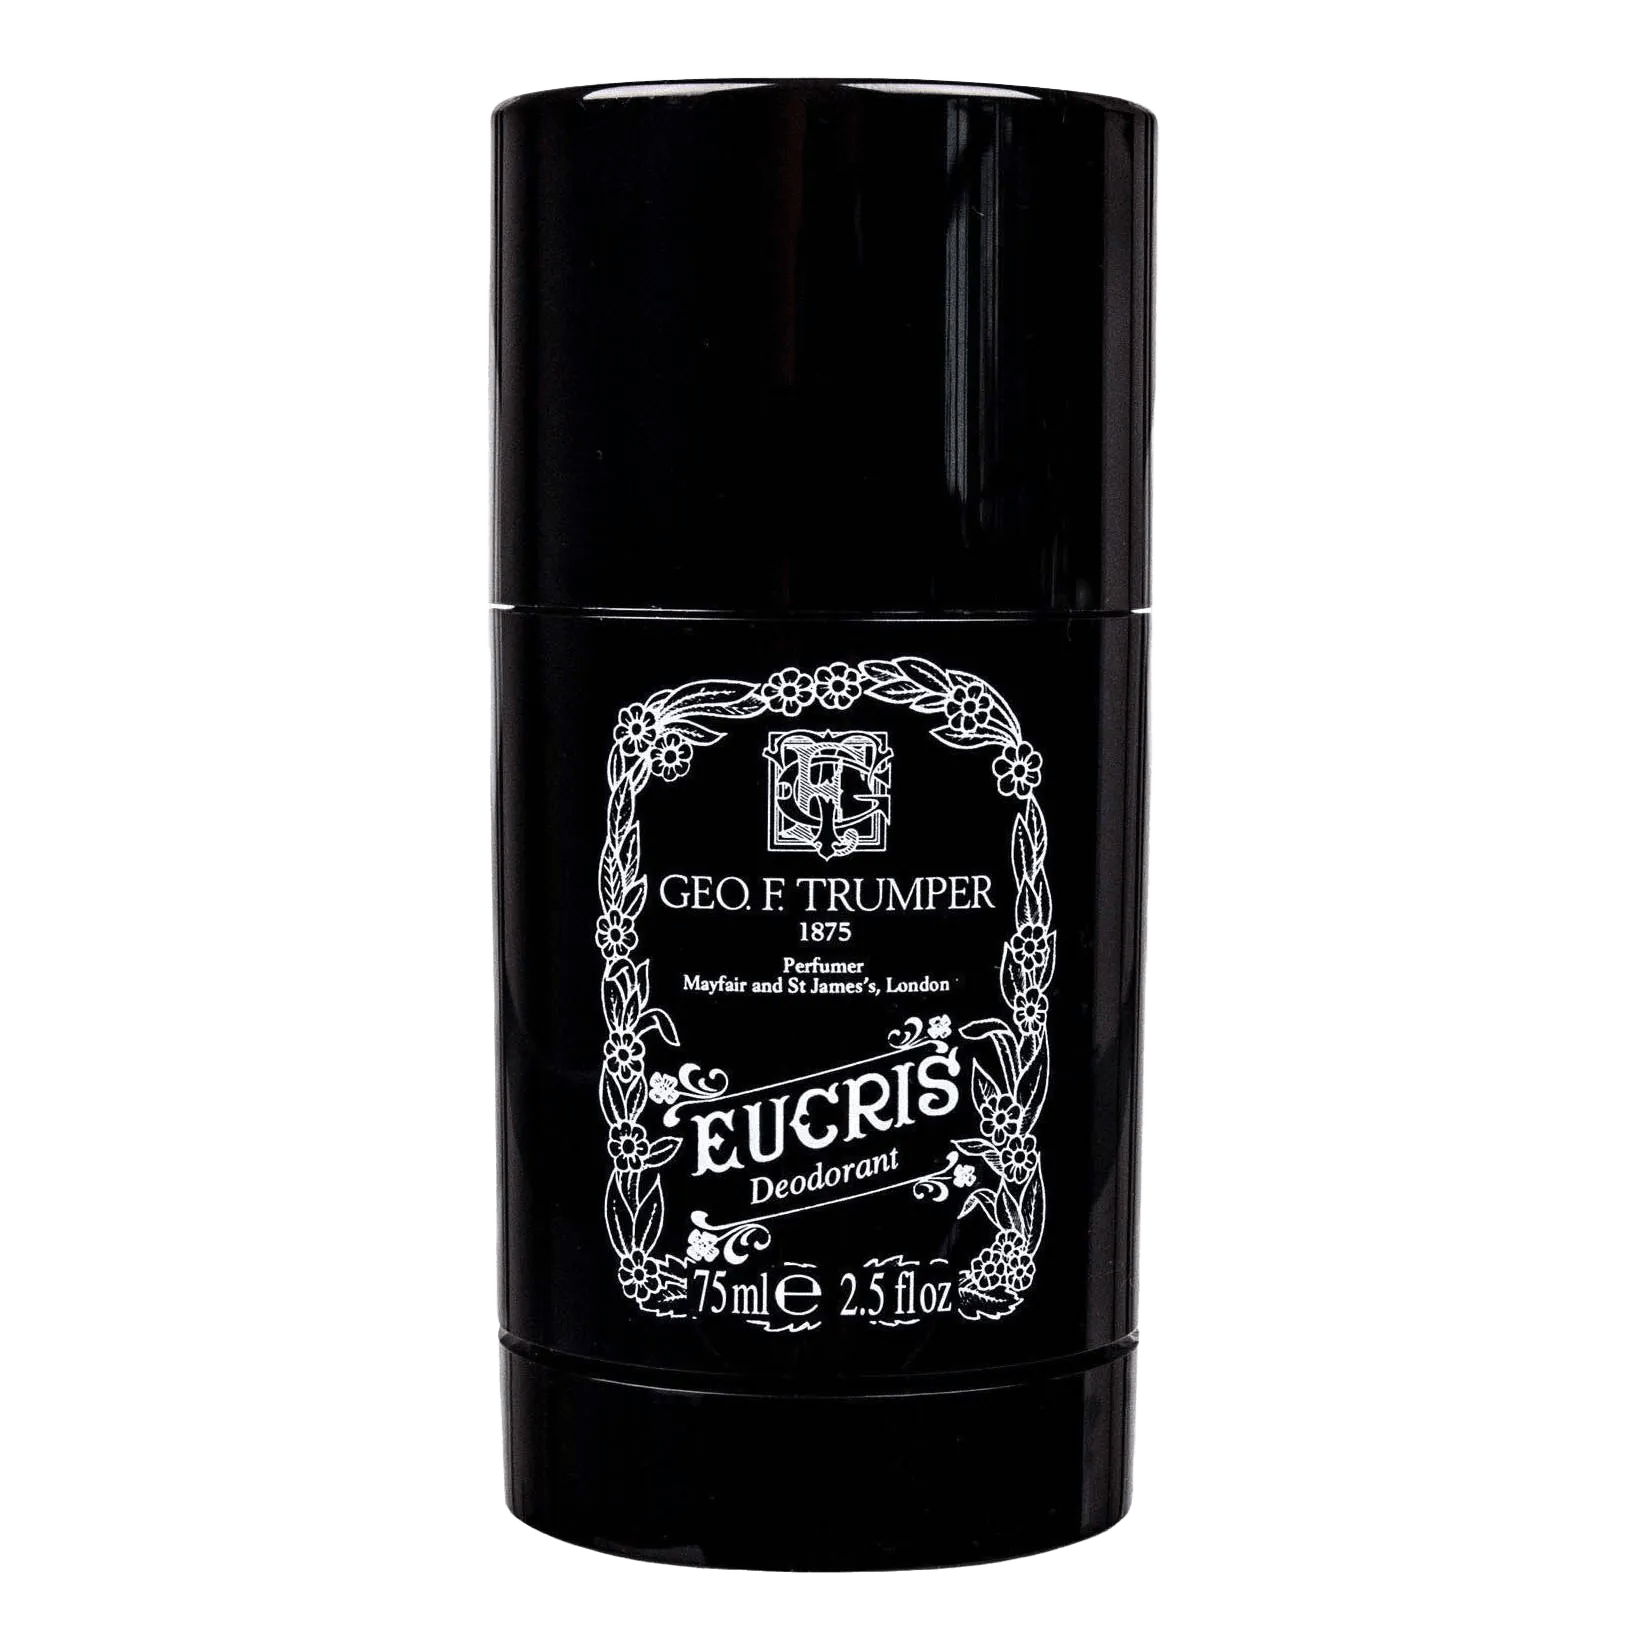 Geo F. Trumper deodorant - Eucris